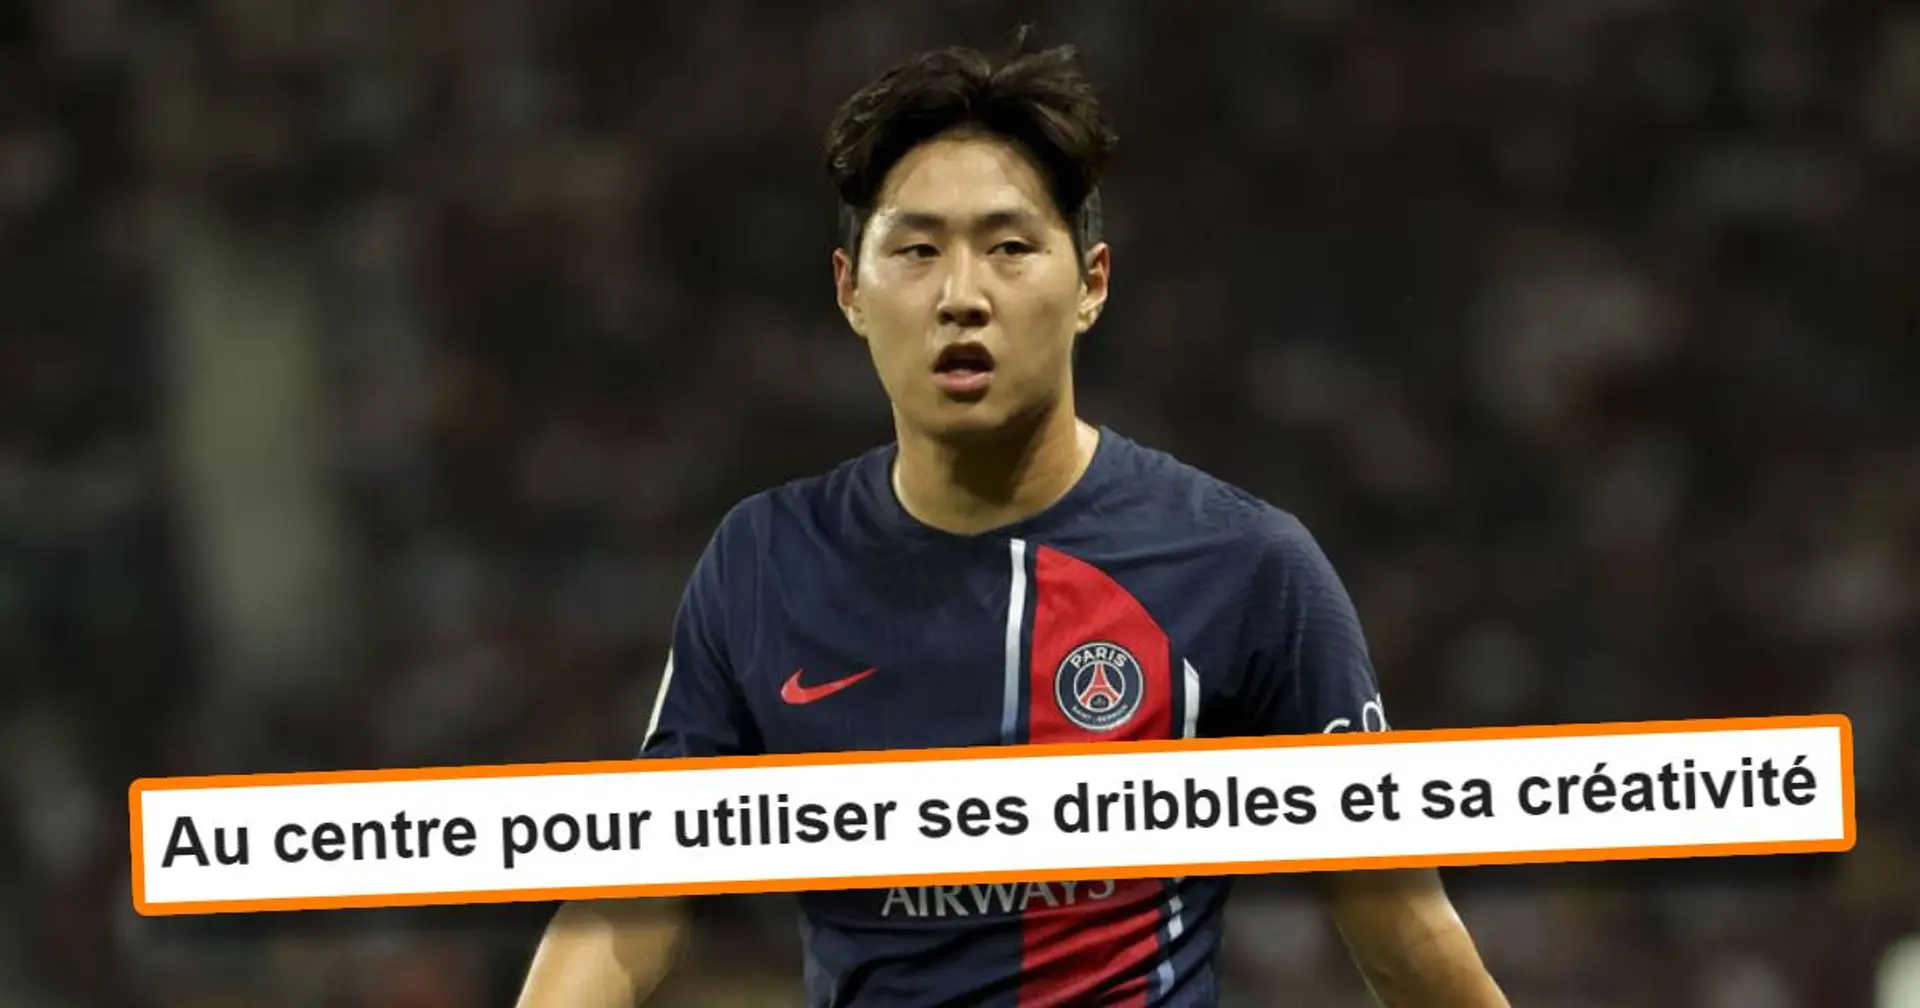 "Pas le rythme pour jouer ailier" : Les fans du PSG évoquent un poste où Lee Kang In serait meilleur